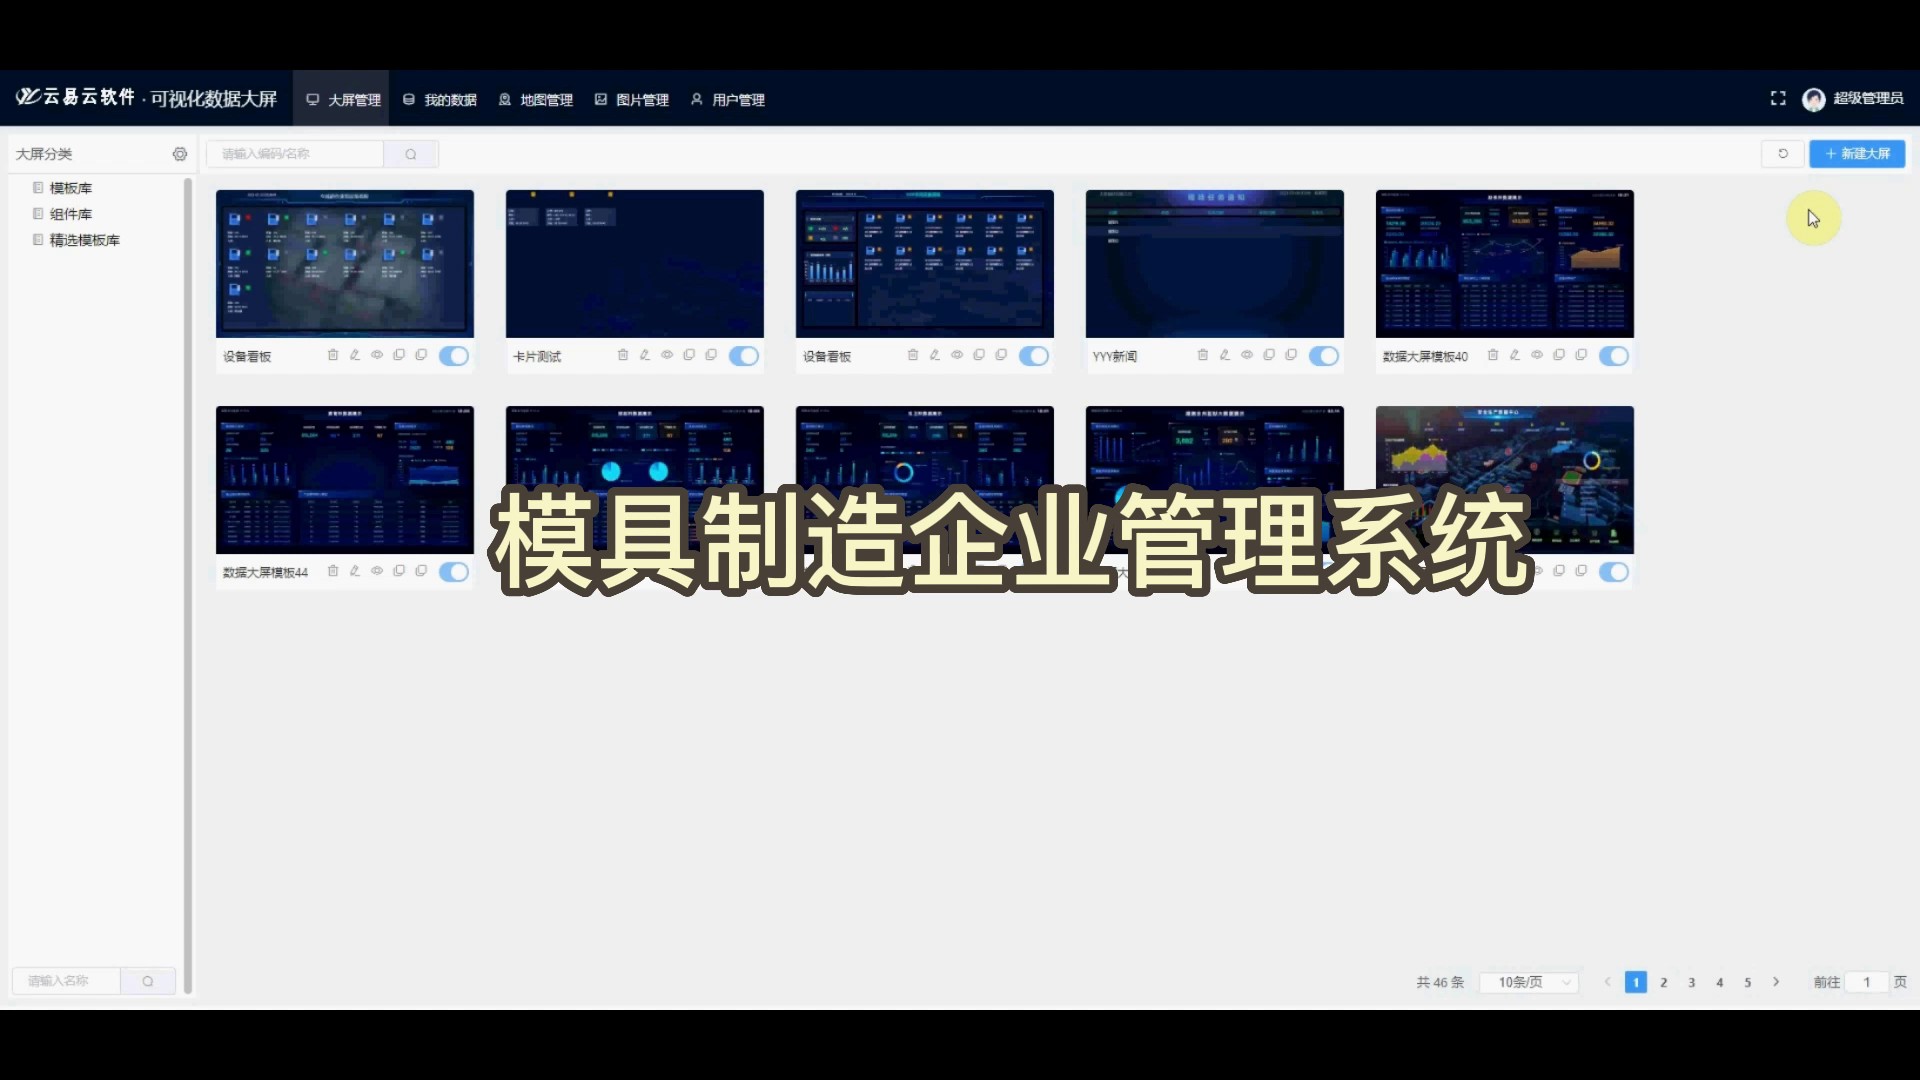 浙江杭州专业模具制造管理软件下载,模具制造管理软件